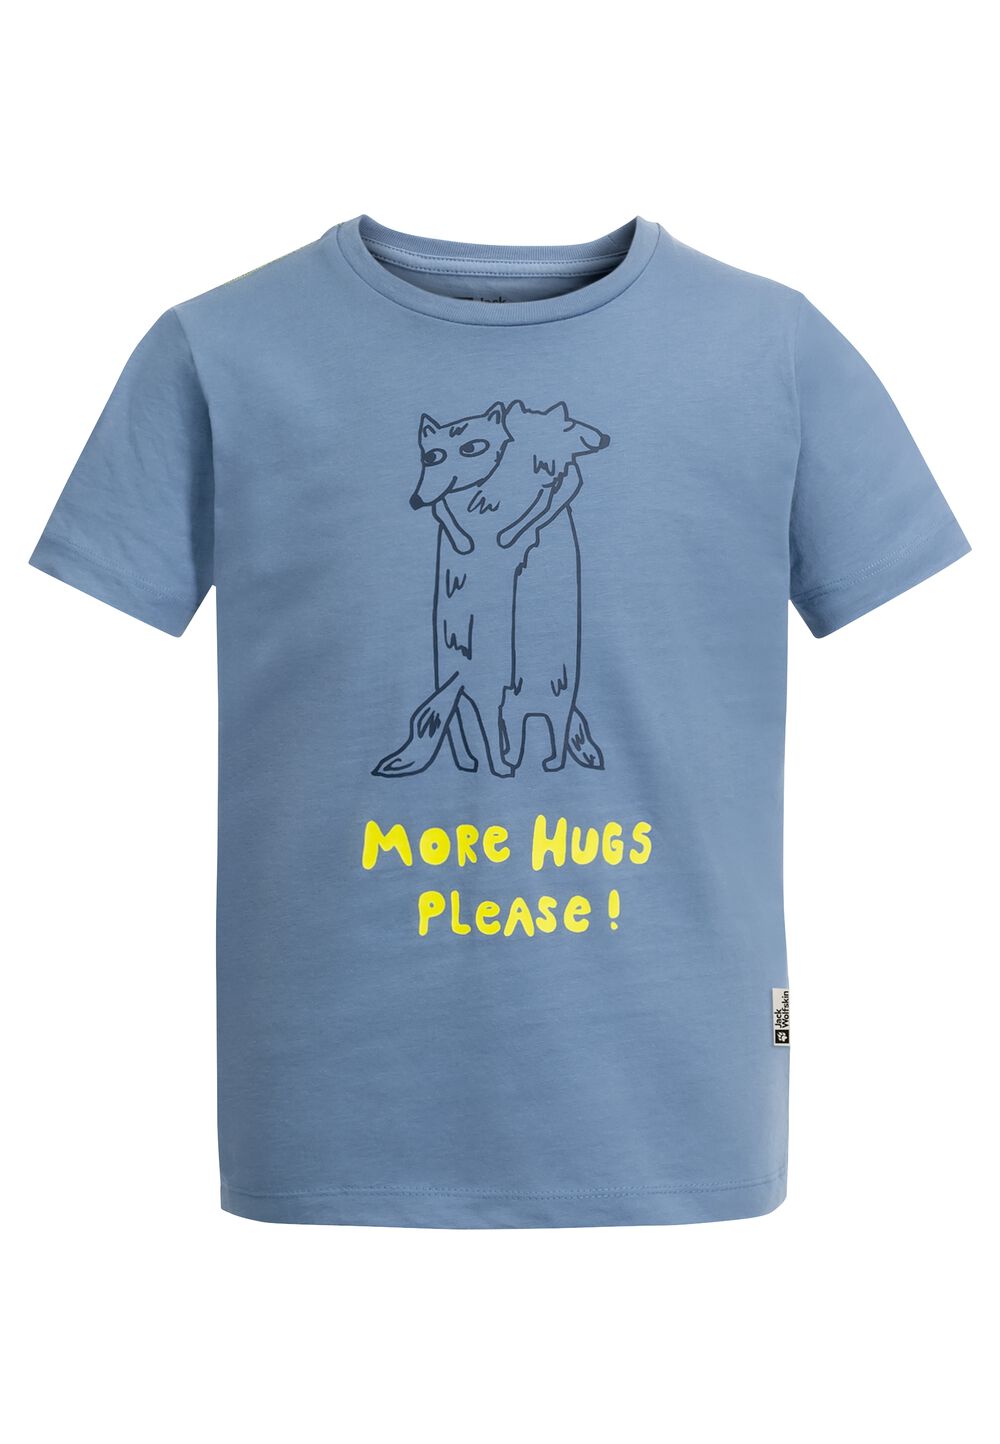 Jack Wolfskin More Hugs T-Shirt Kids T-shirt van biologisch katoen kinderen 92 ele tal blue ele tal blue